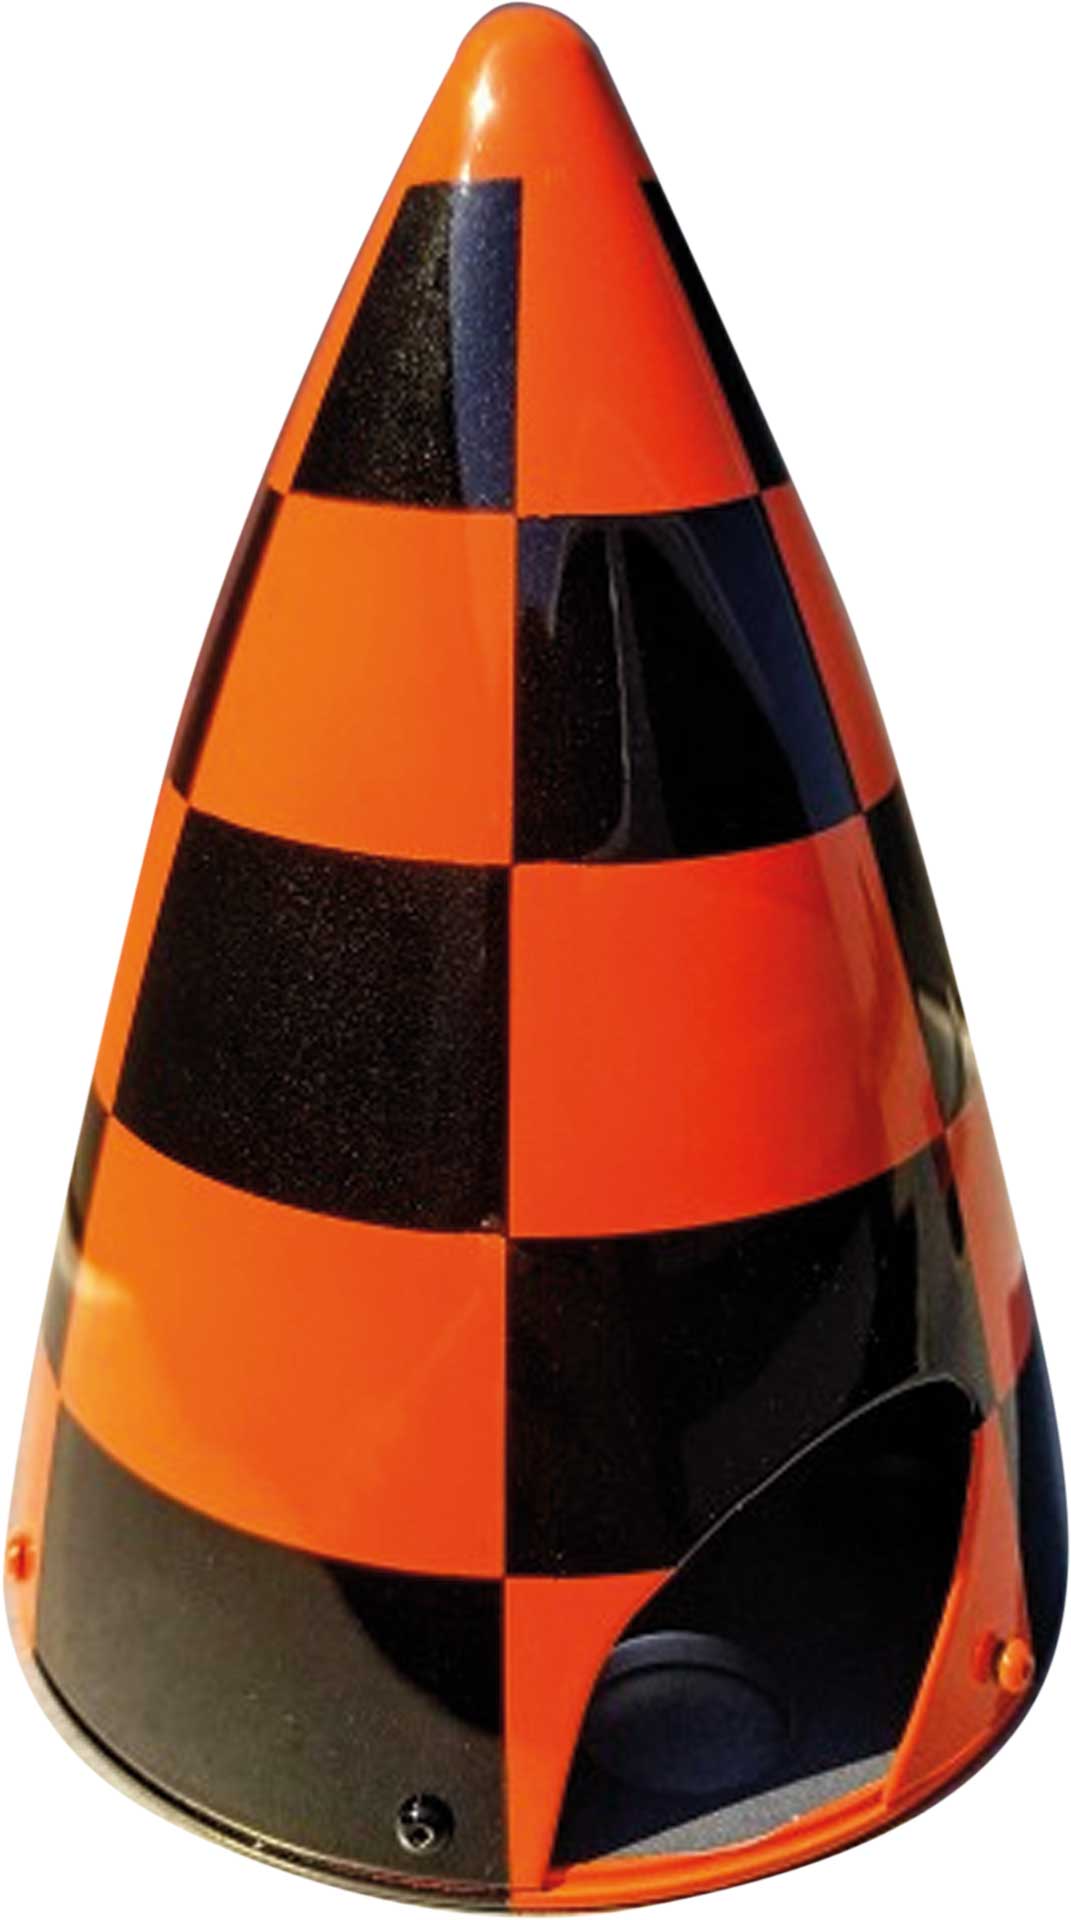 EXTREMEFLIGHT-RC Spinner Carbon 4.5" (114mm) Orange/Metallic schwarz